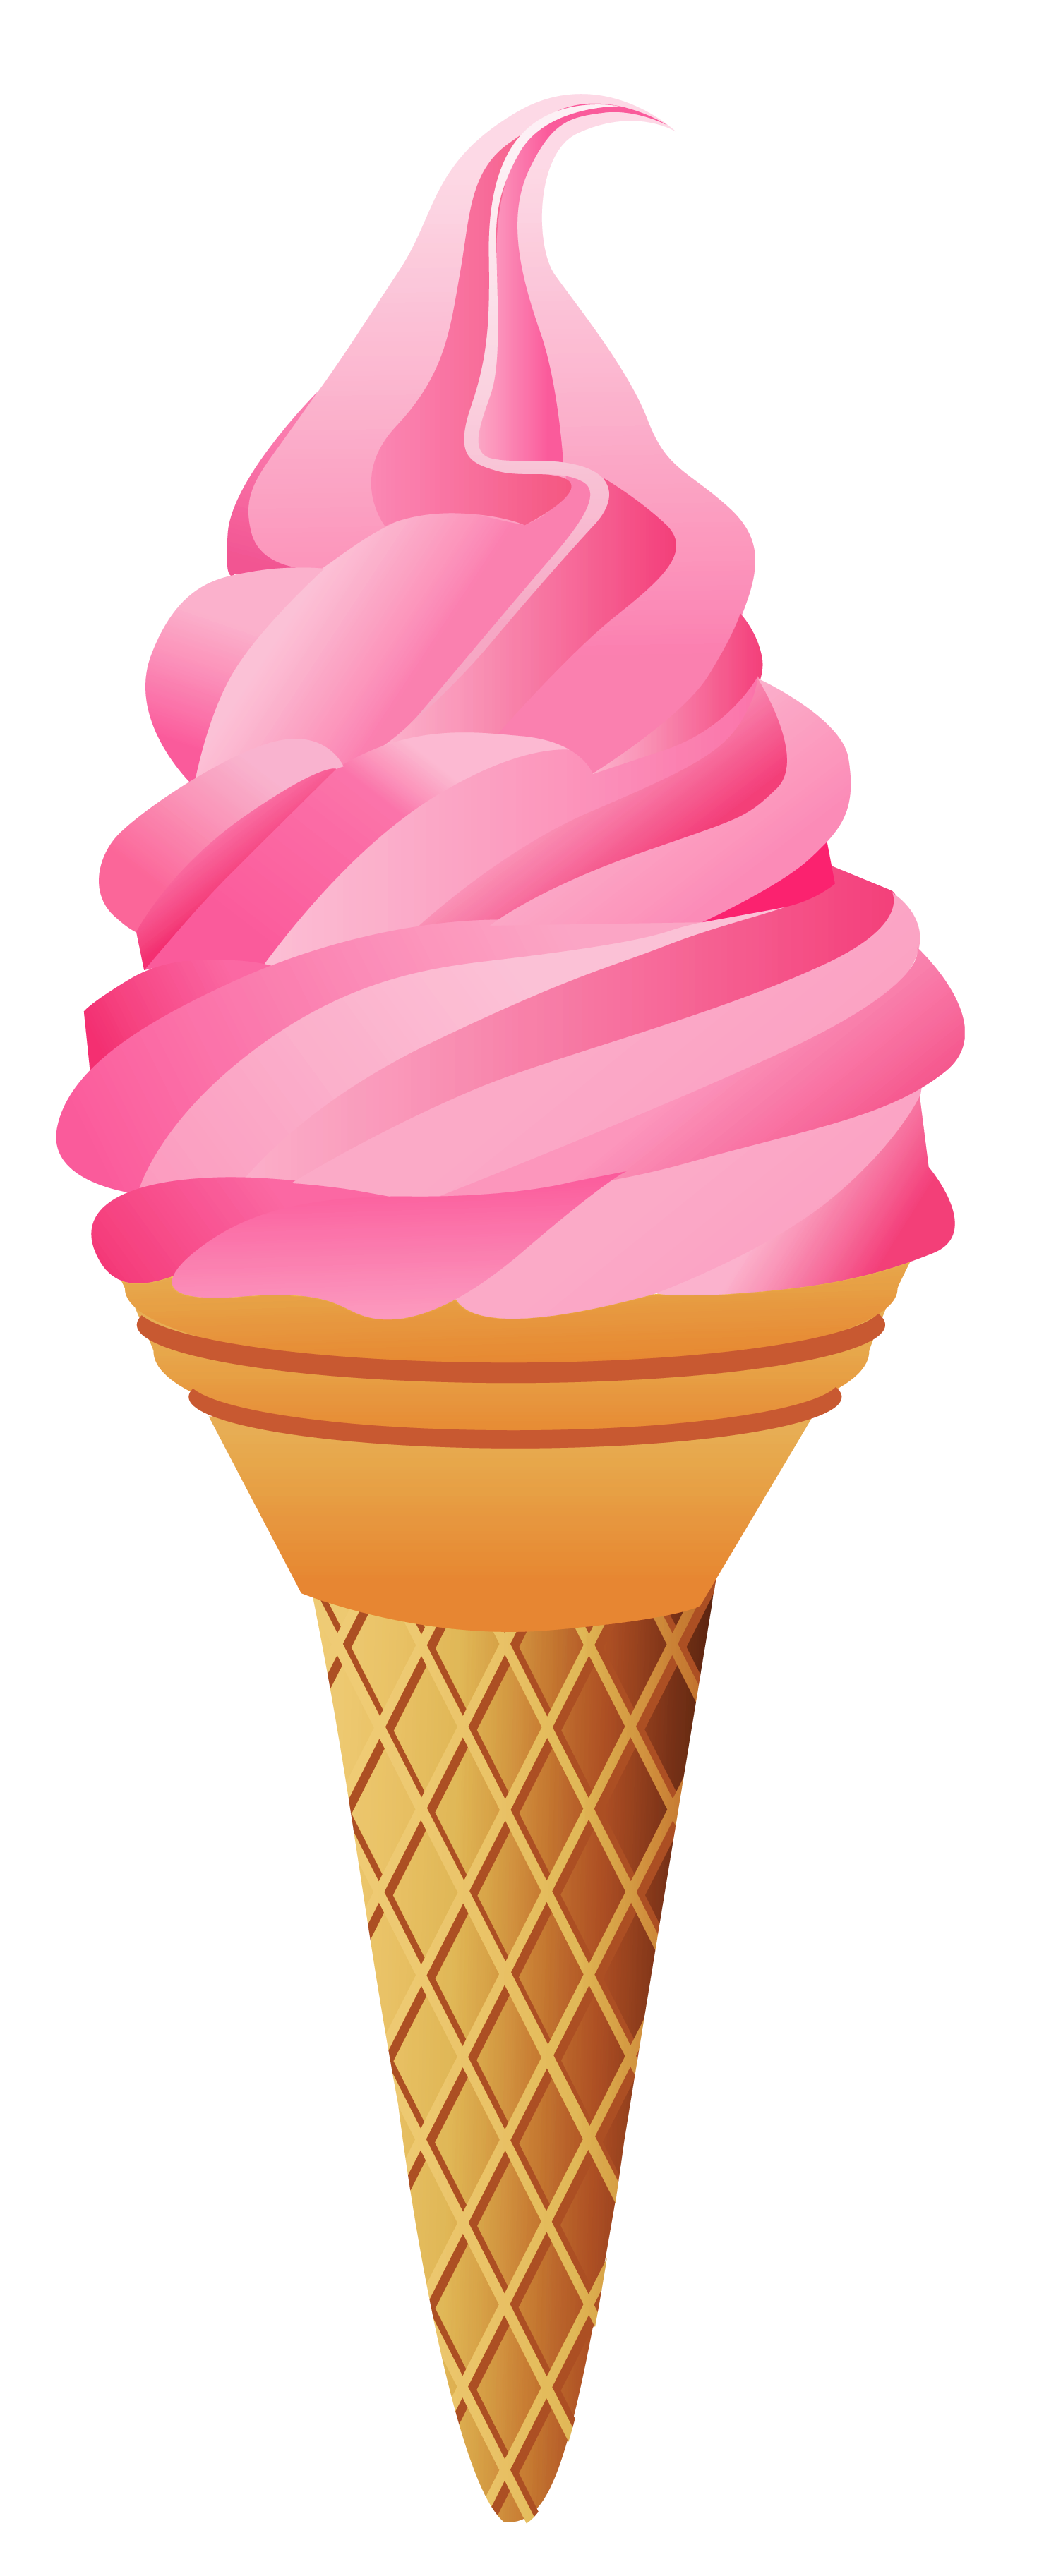 strawberries clipart ice cream cone